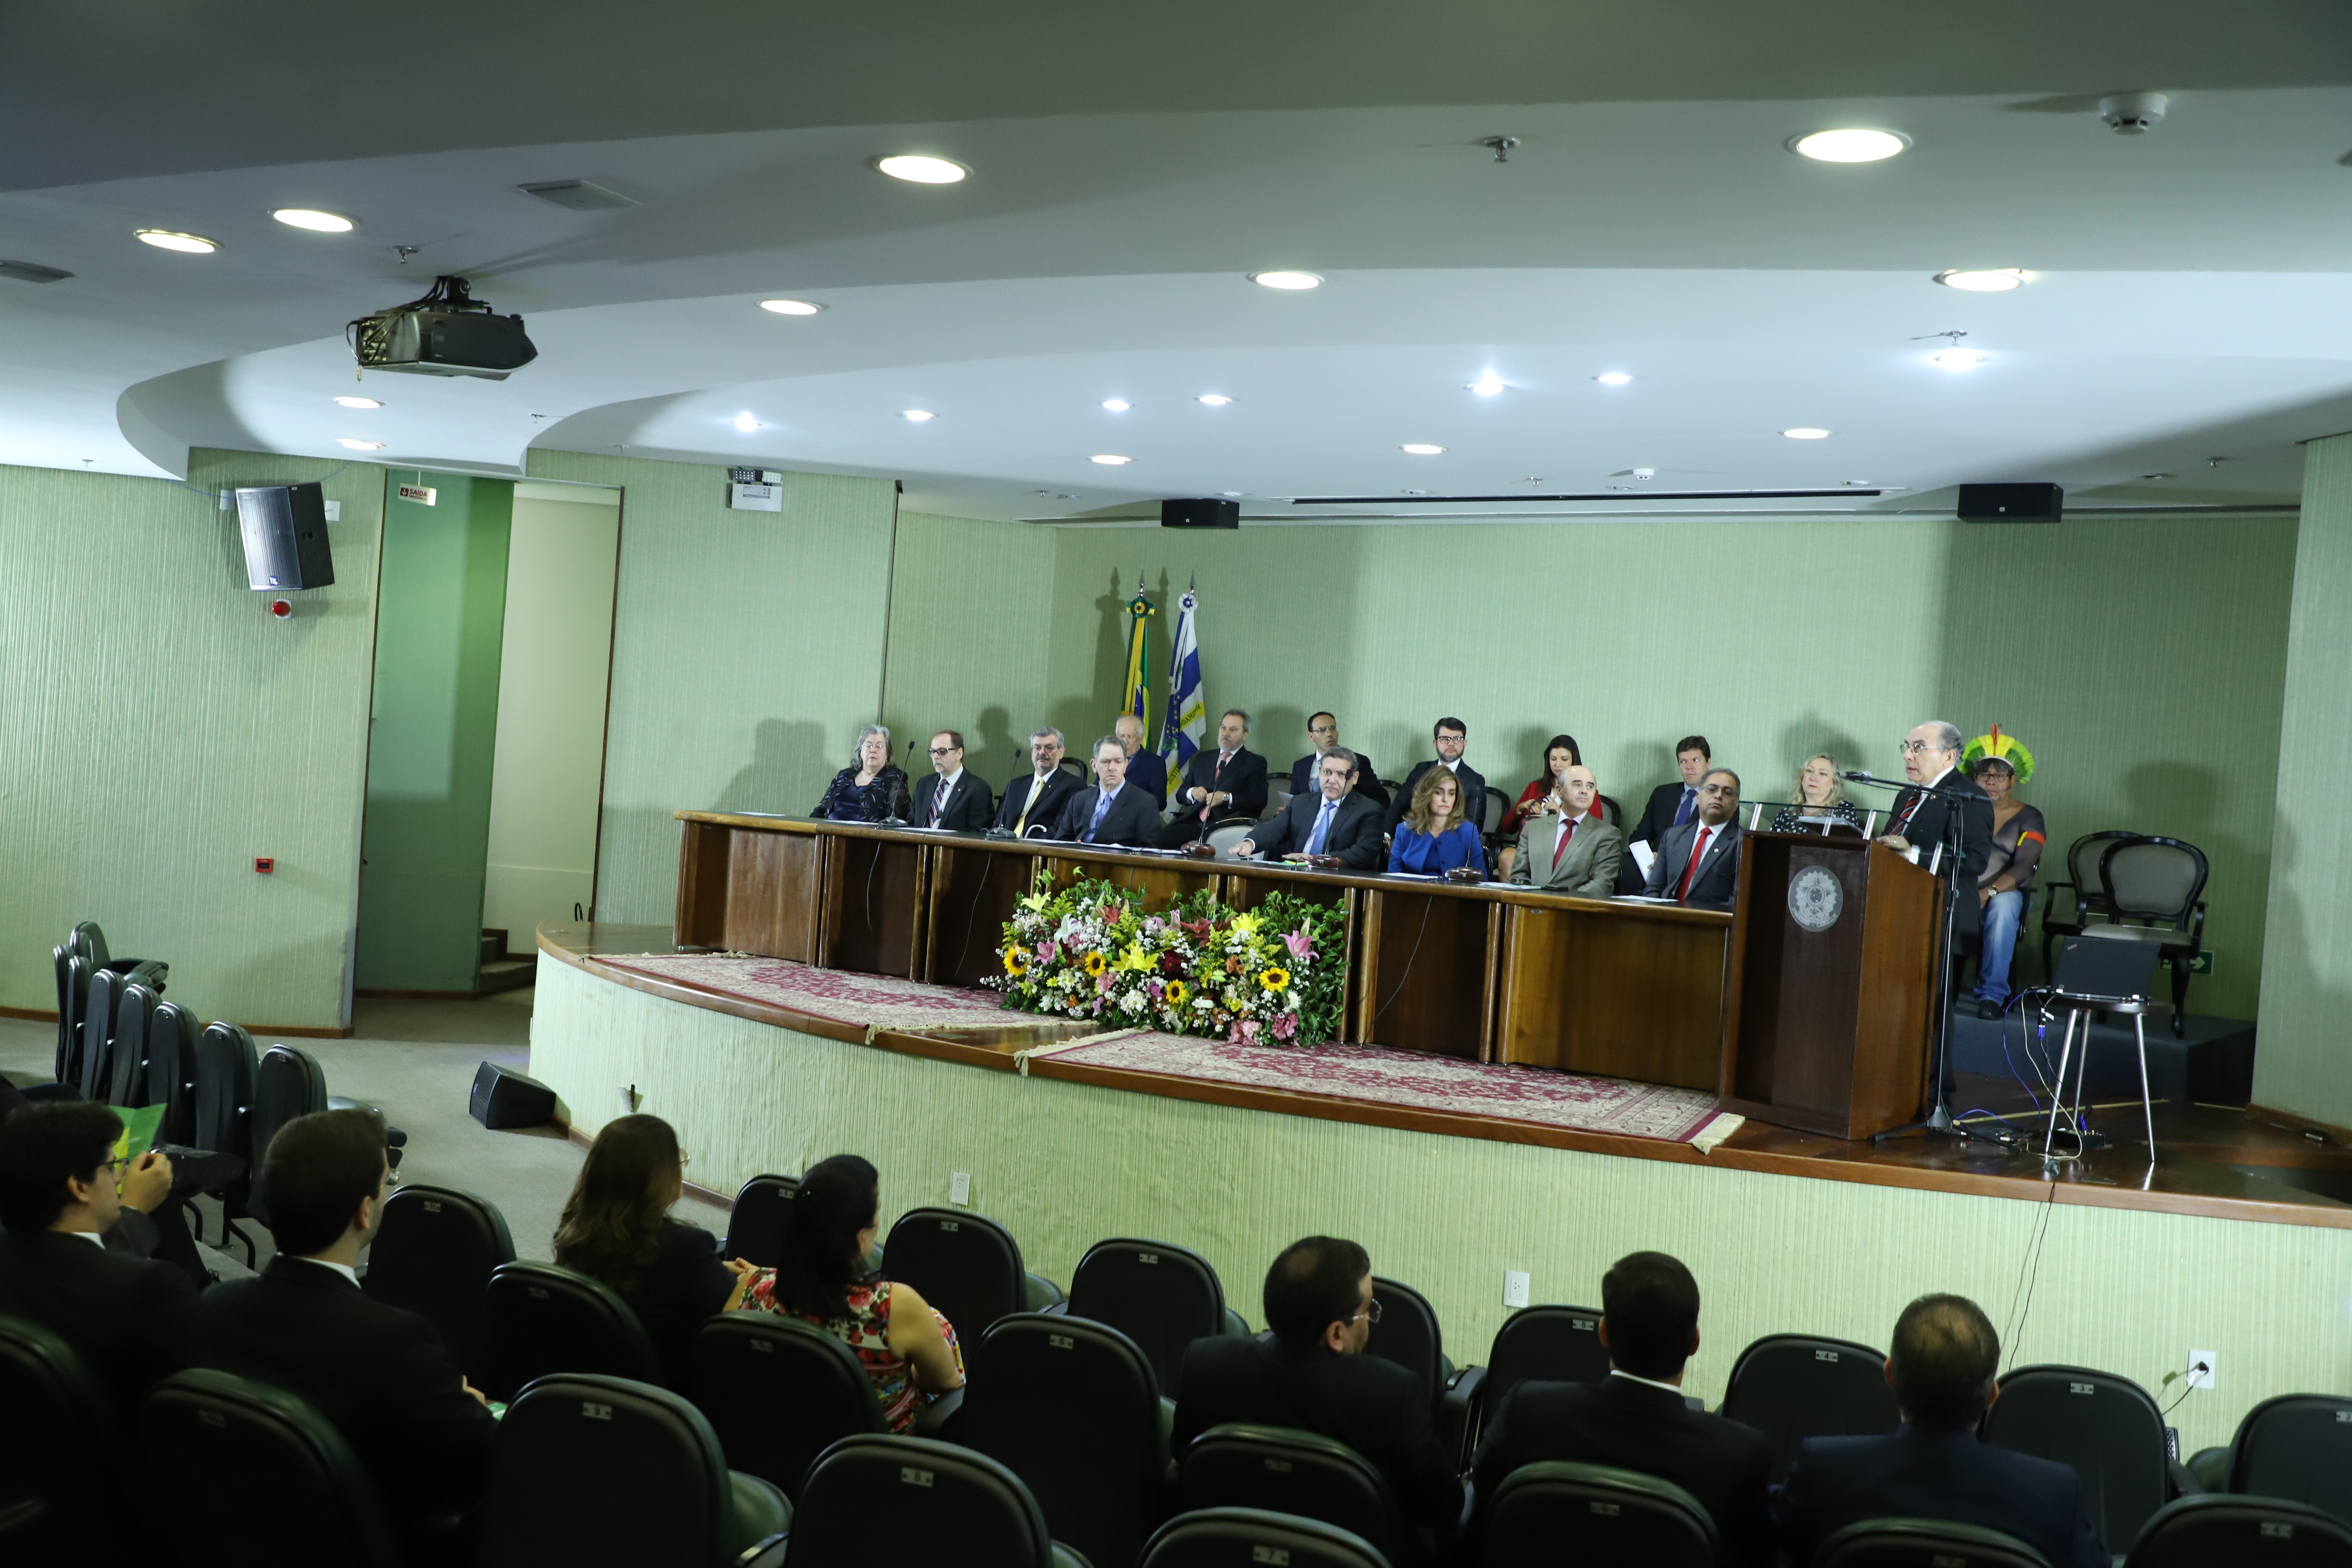 II Fórum Jurídico da Esmaf tem inicio com reflexões sobre crise migratória e efetivação dos direitos humanos no Brasil